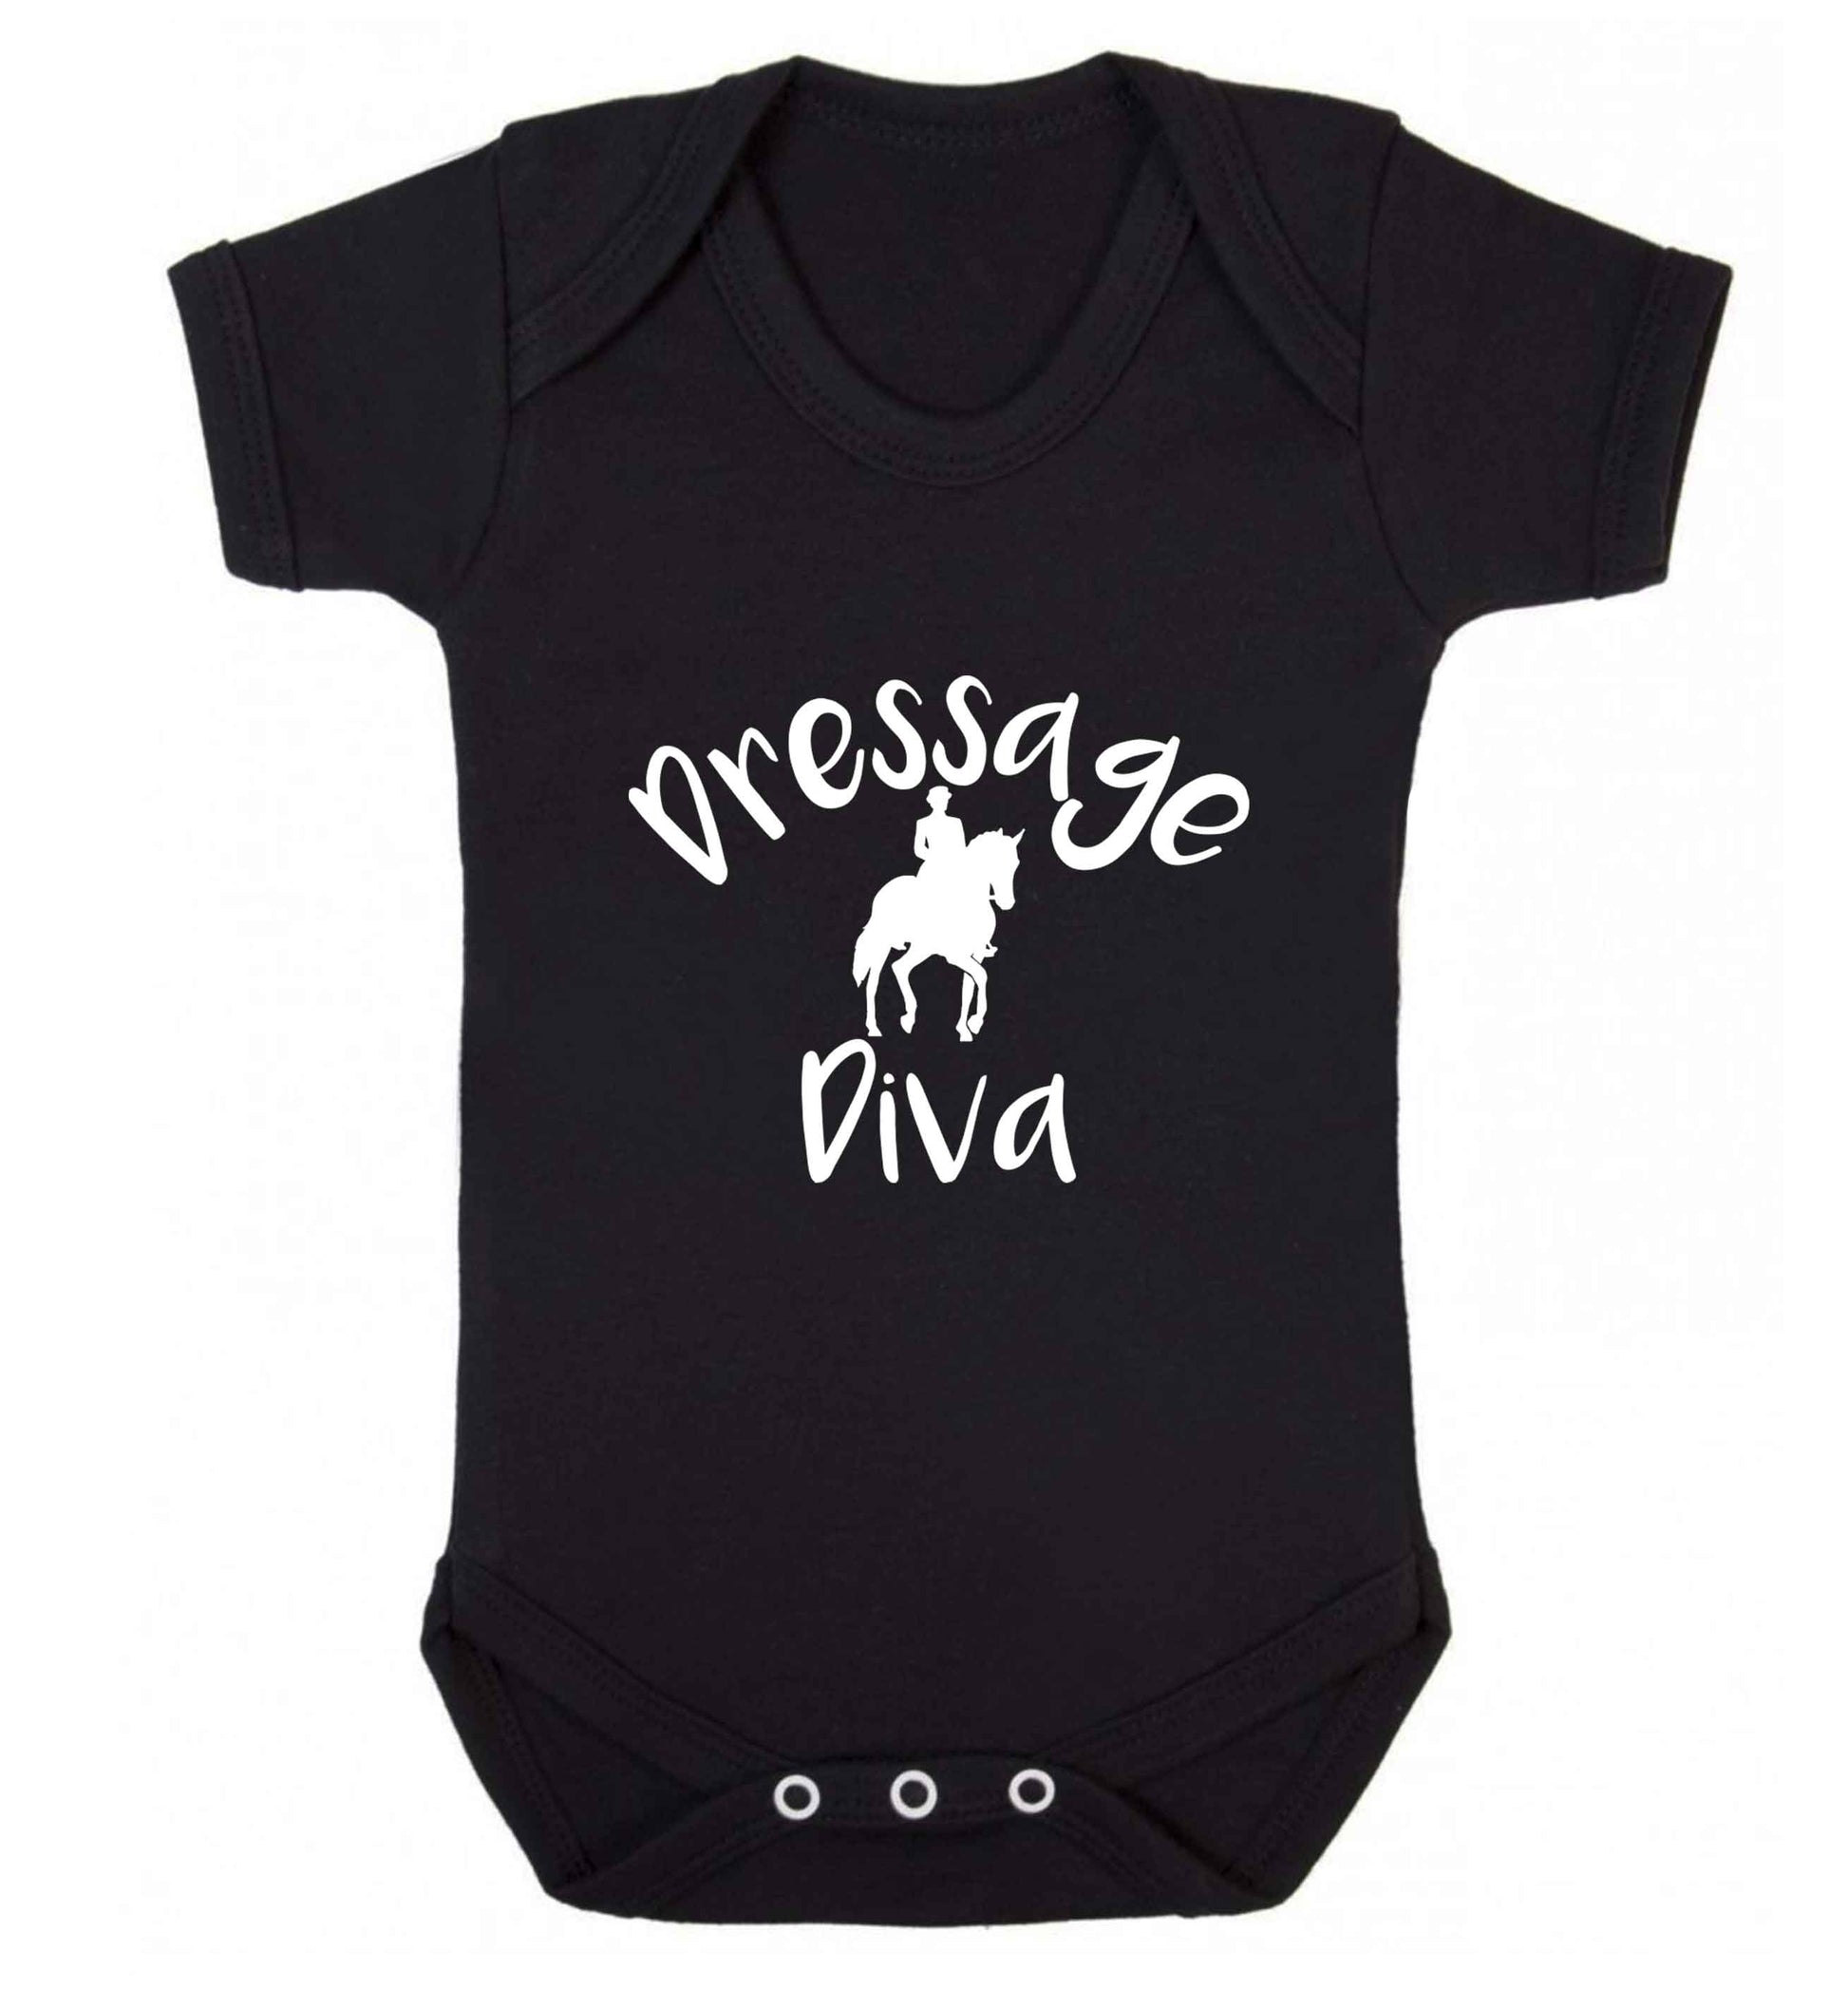 Dressage diva baby vest black 18-24 months